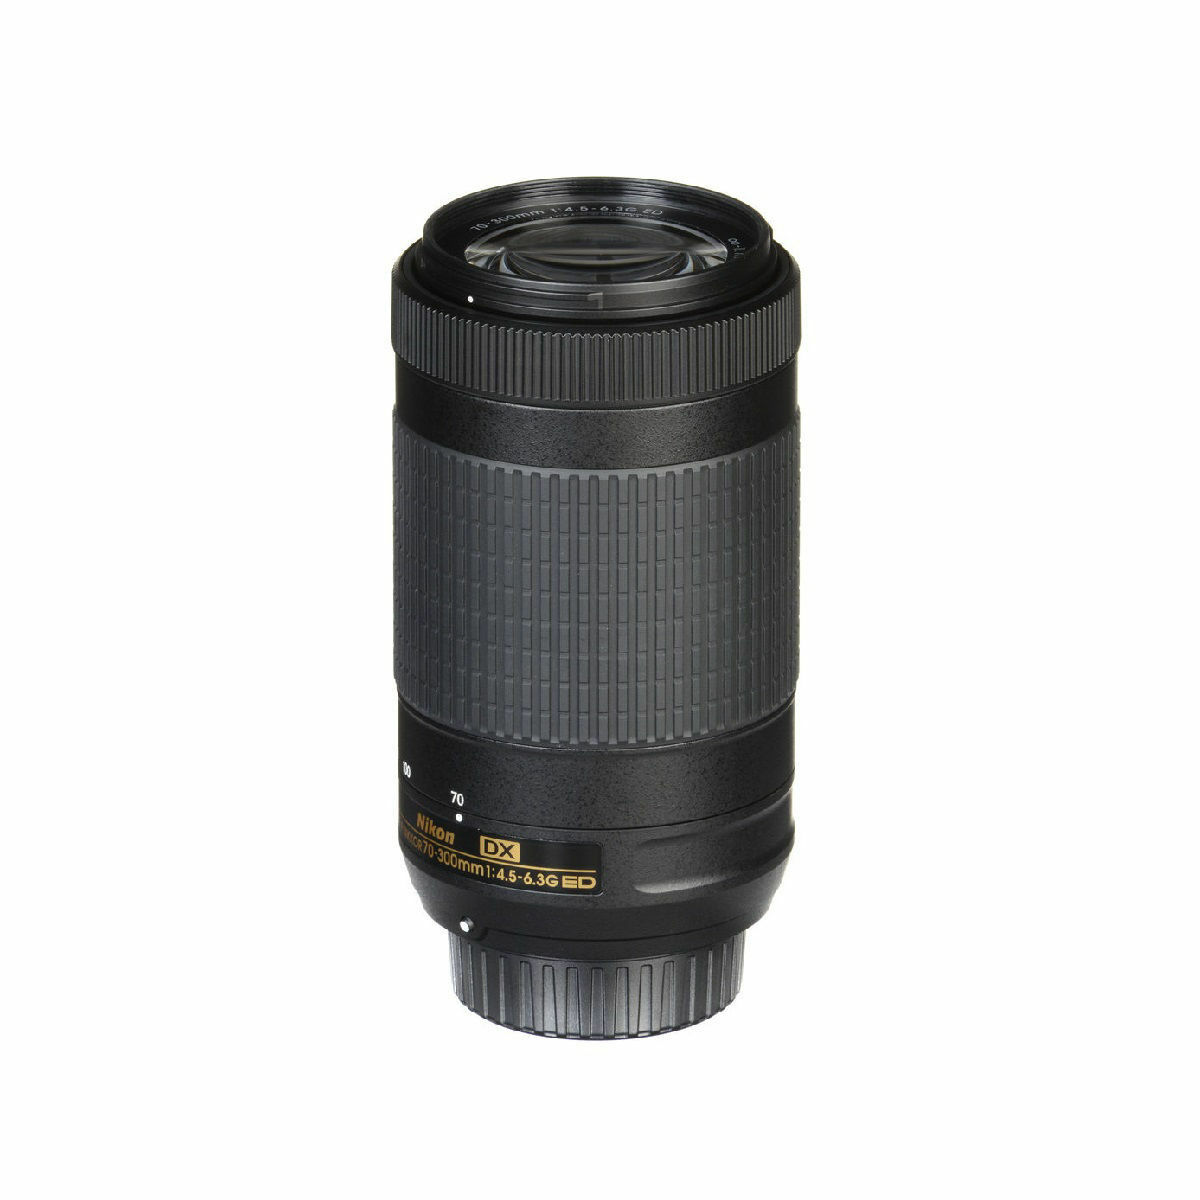 Nikon AF-P DX NIKKOR 70-300mm f/4.5-6.3G